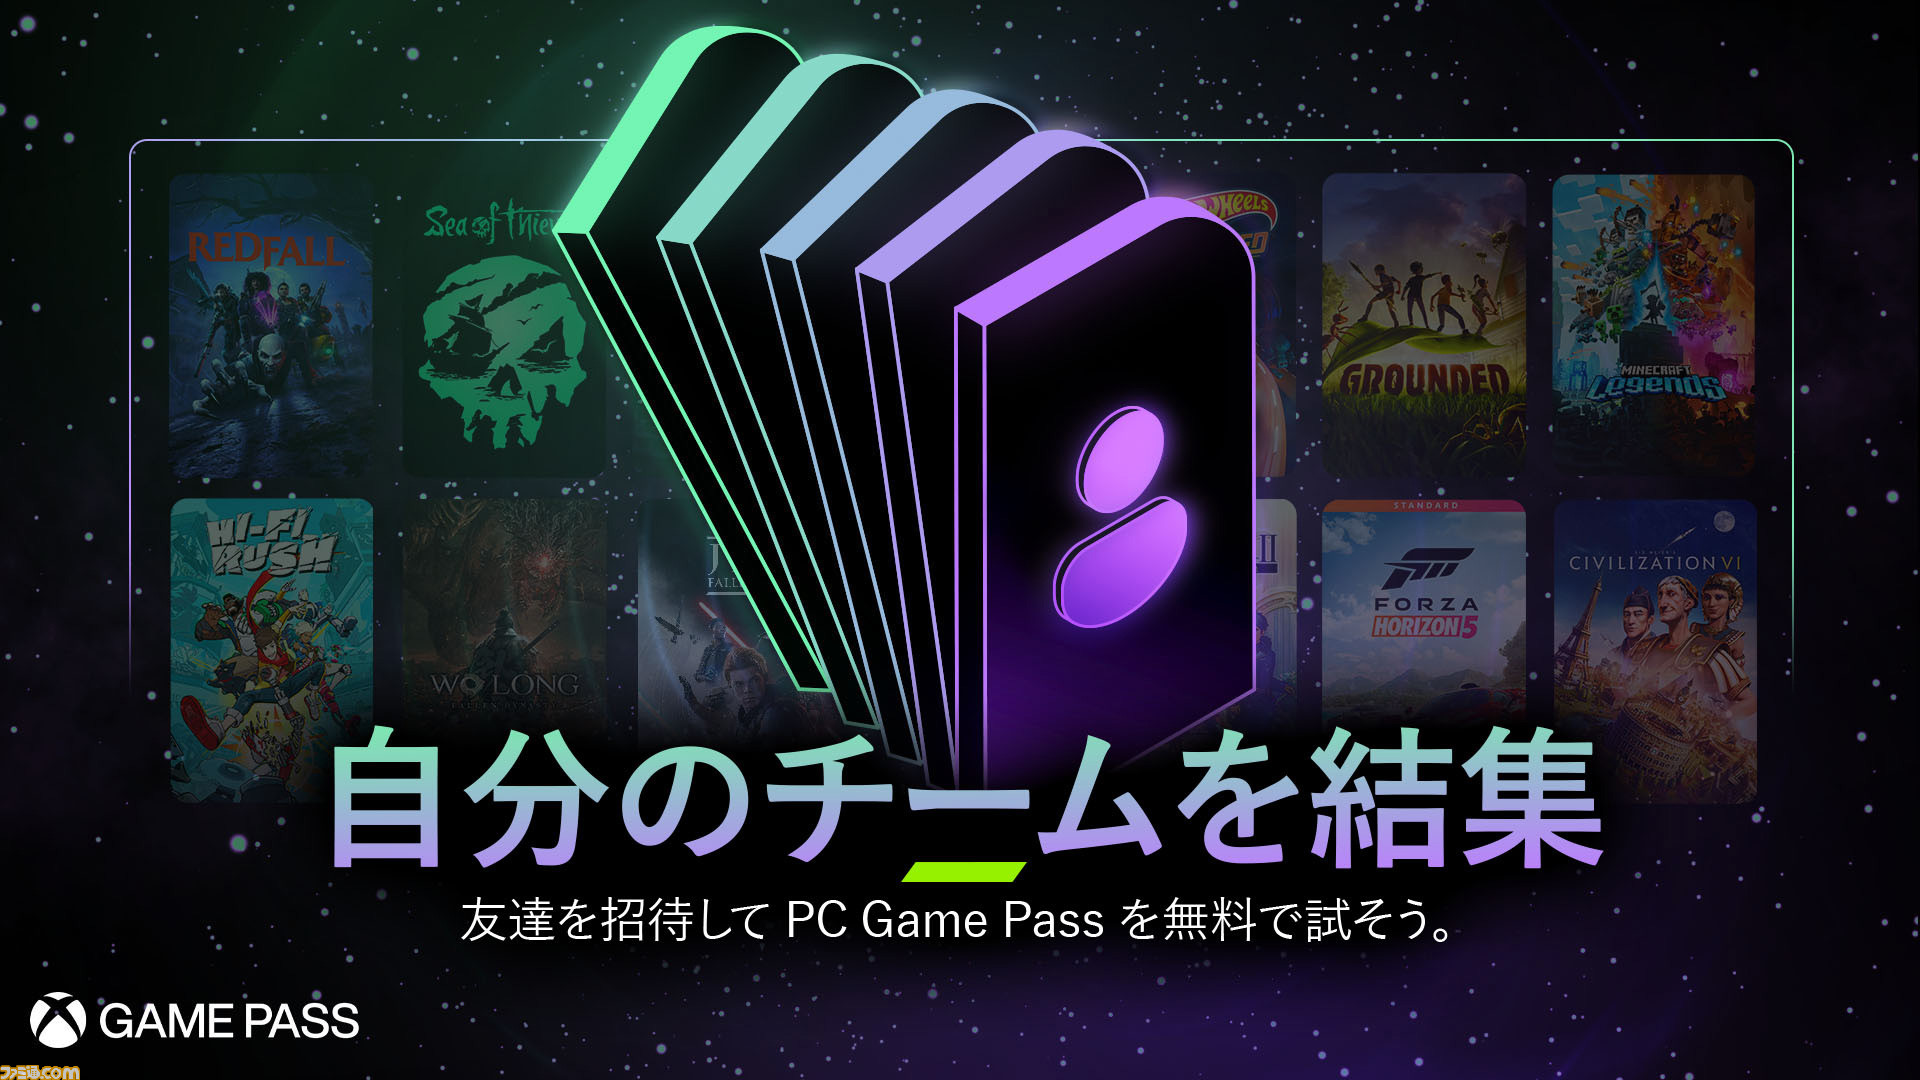 1 mês grátis de PC Game Pass na Mastercard - PortalFinança.com